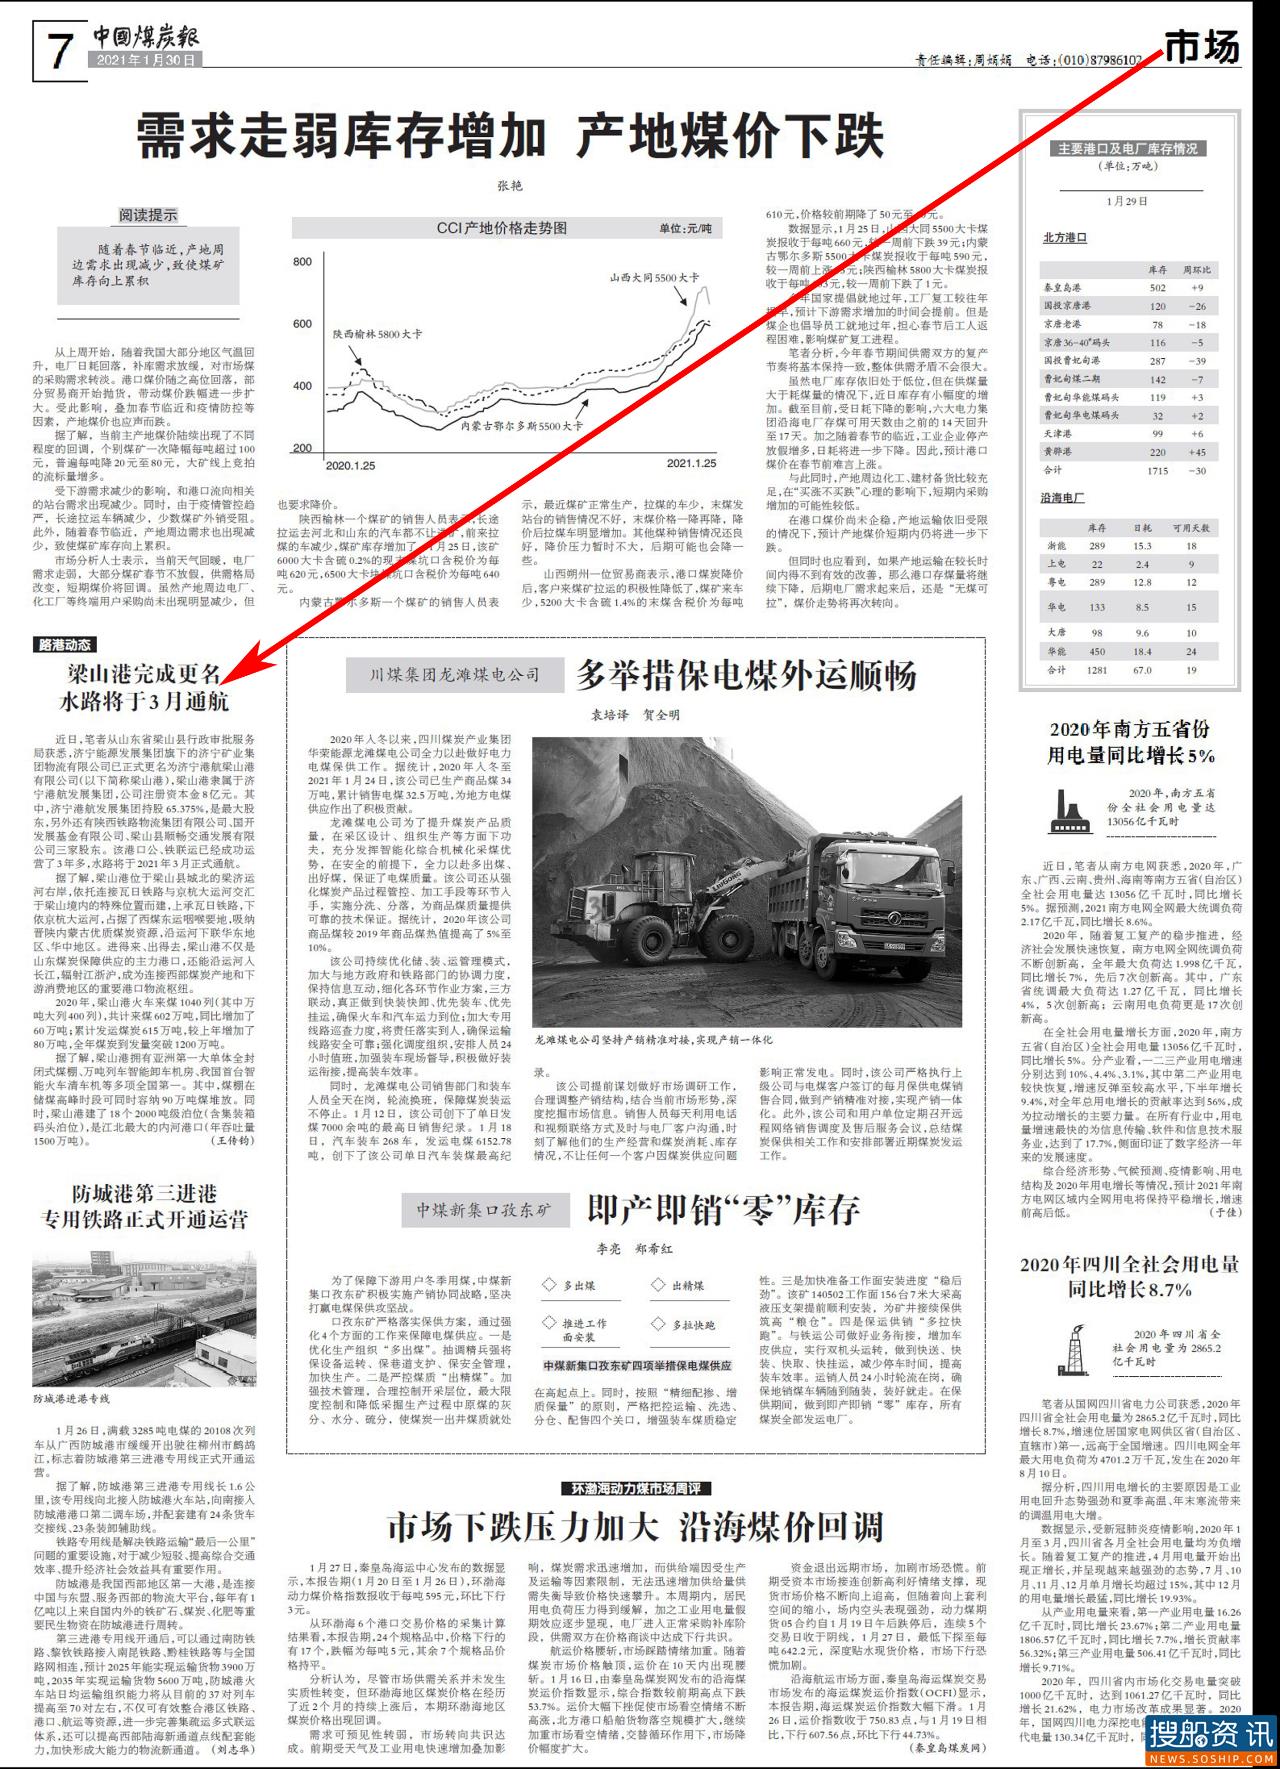 多家新闻媒体报道“济矿物流更名为‘梁山港’”的新闻